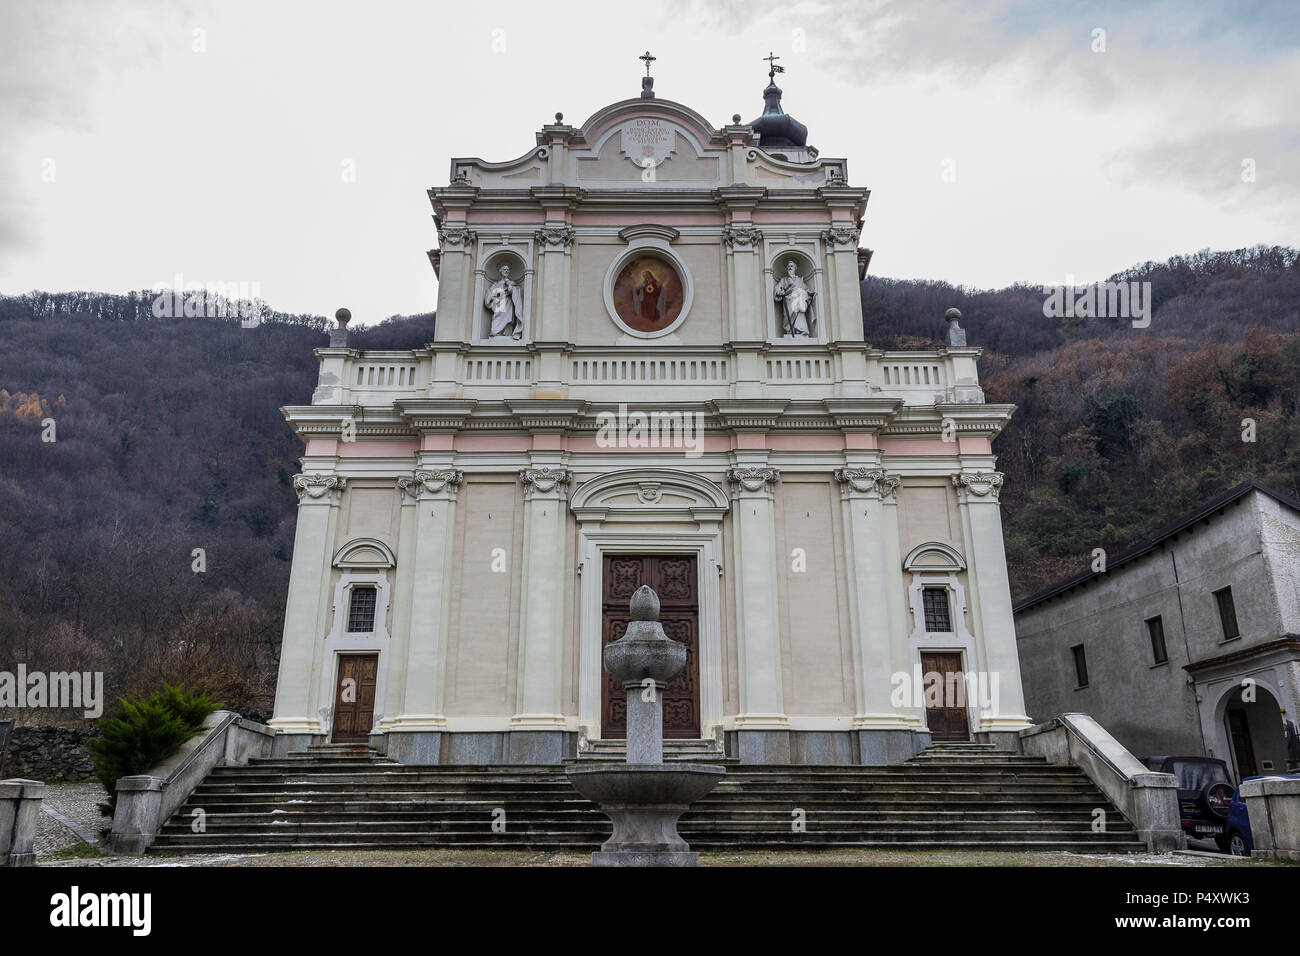 La chiesa di Chiusa di San Michele in Val di Susa Foto Stock